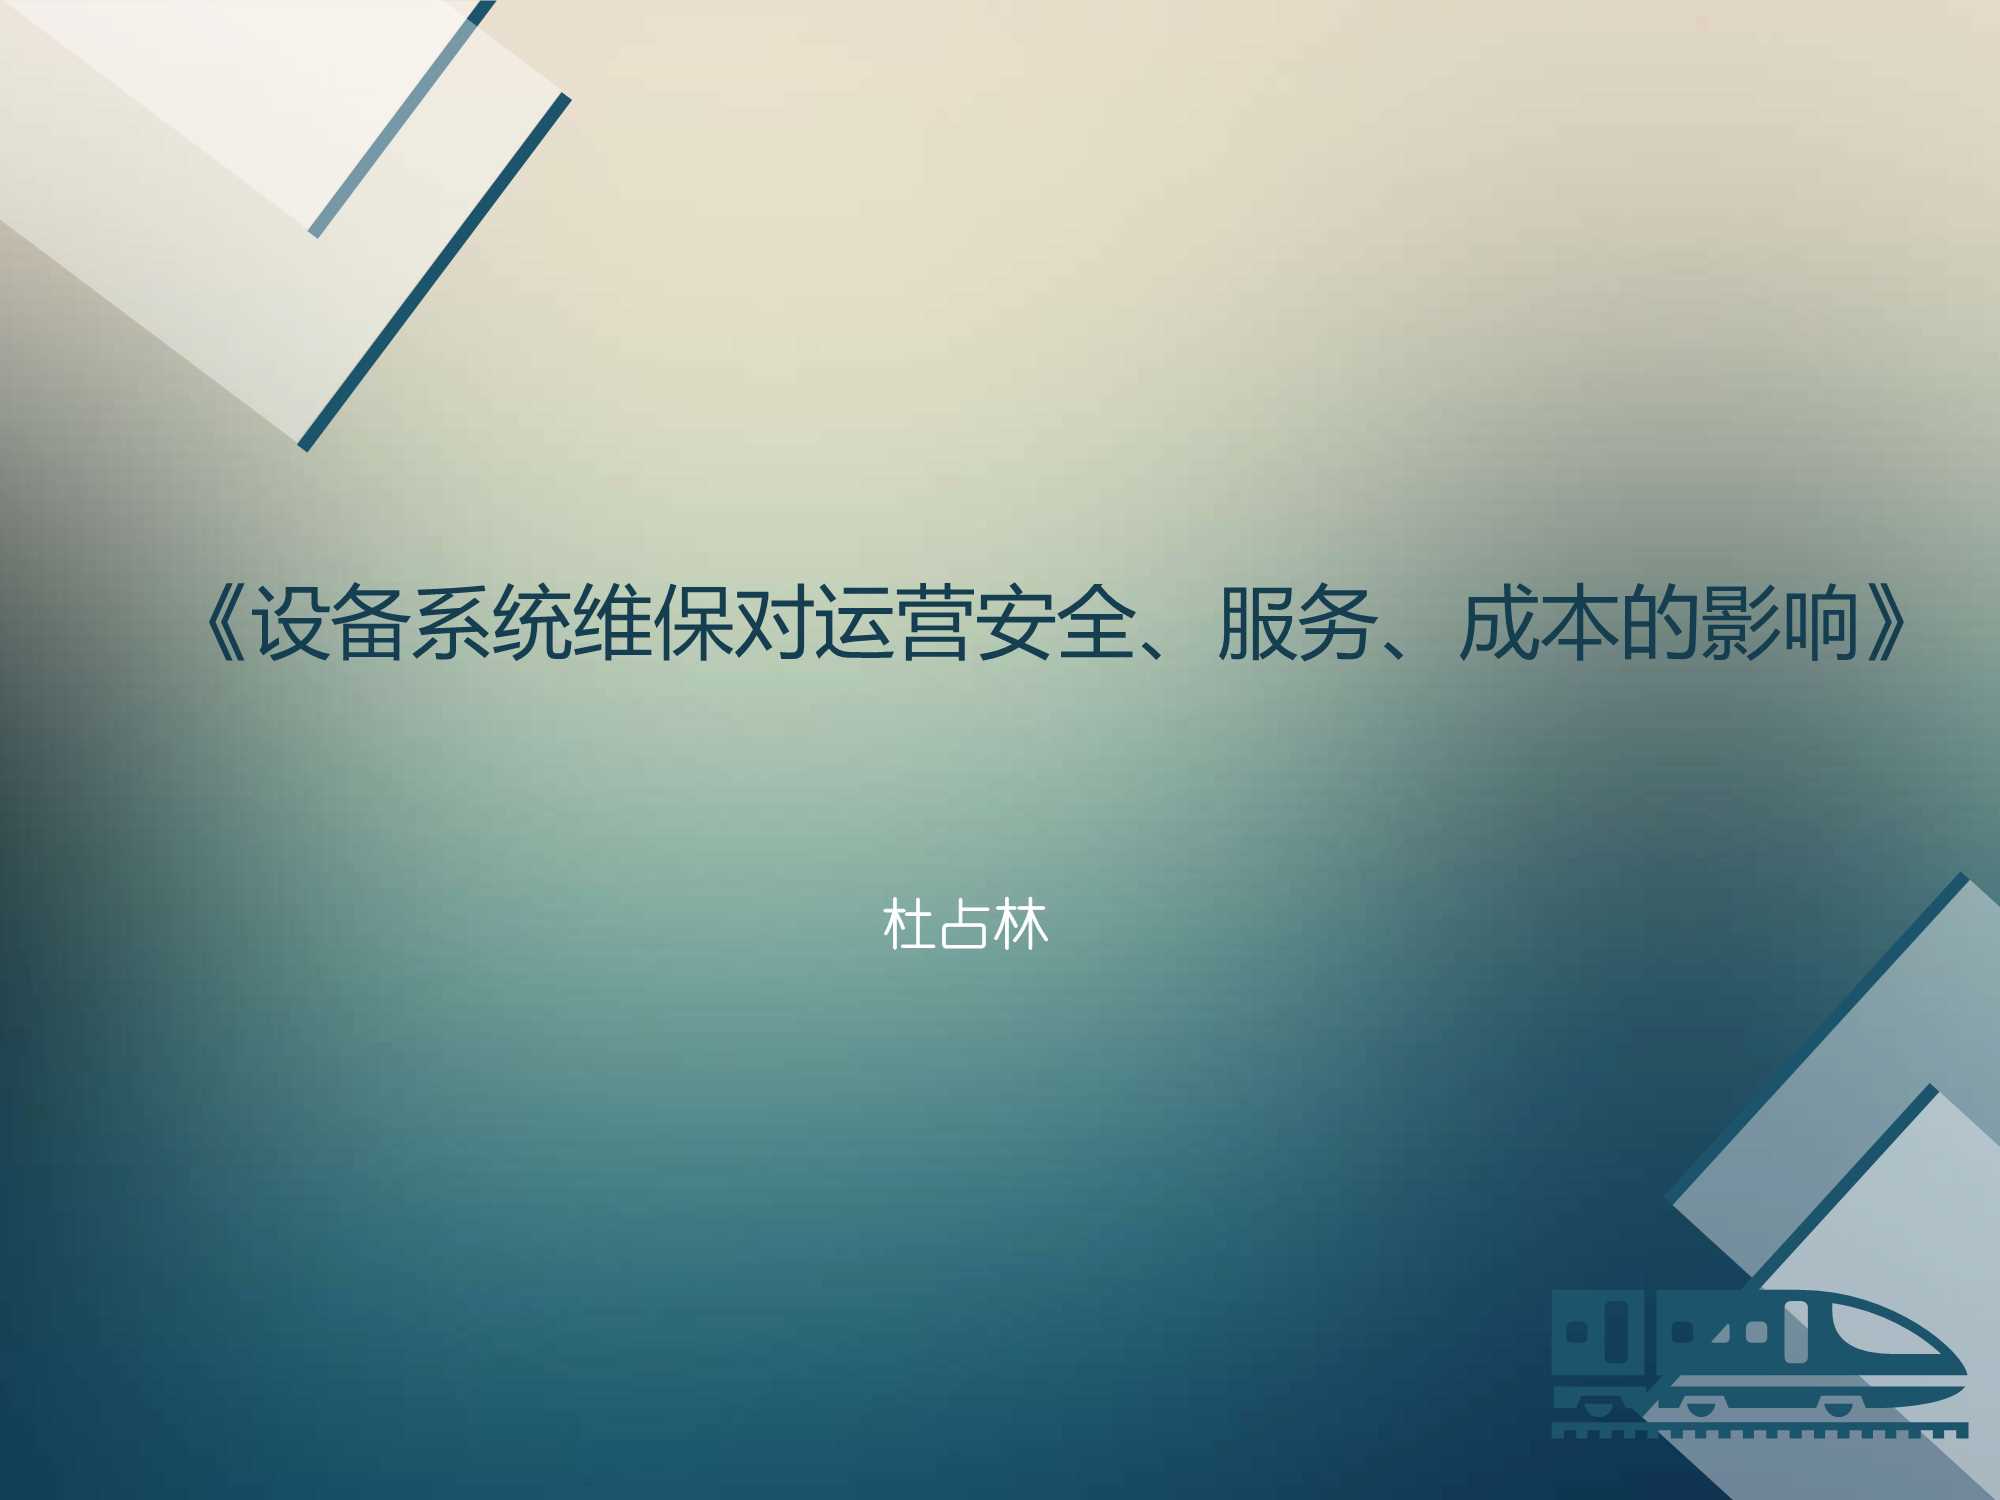 杜占林-设备系统维保对运营安全、服务、成本的影响（北京地铁）-2016.11-16页